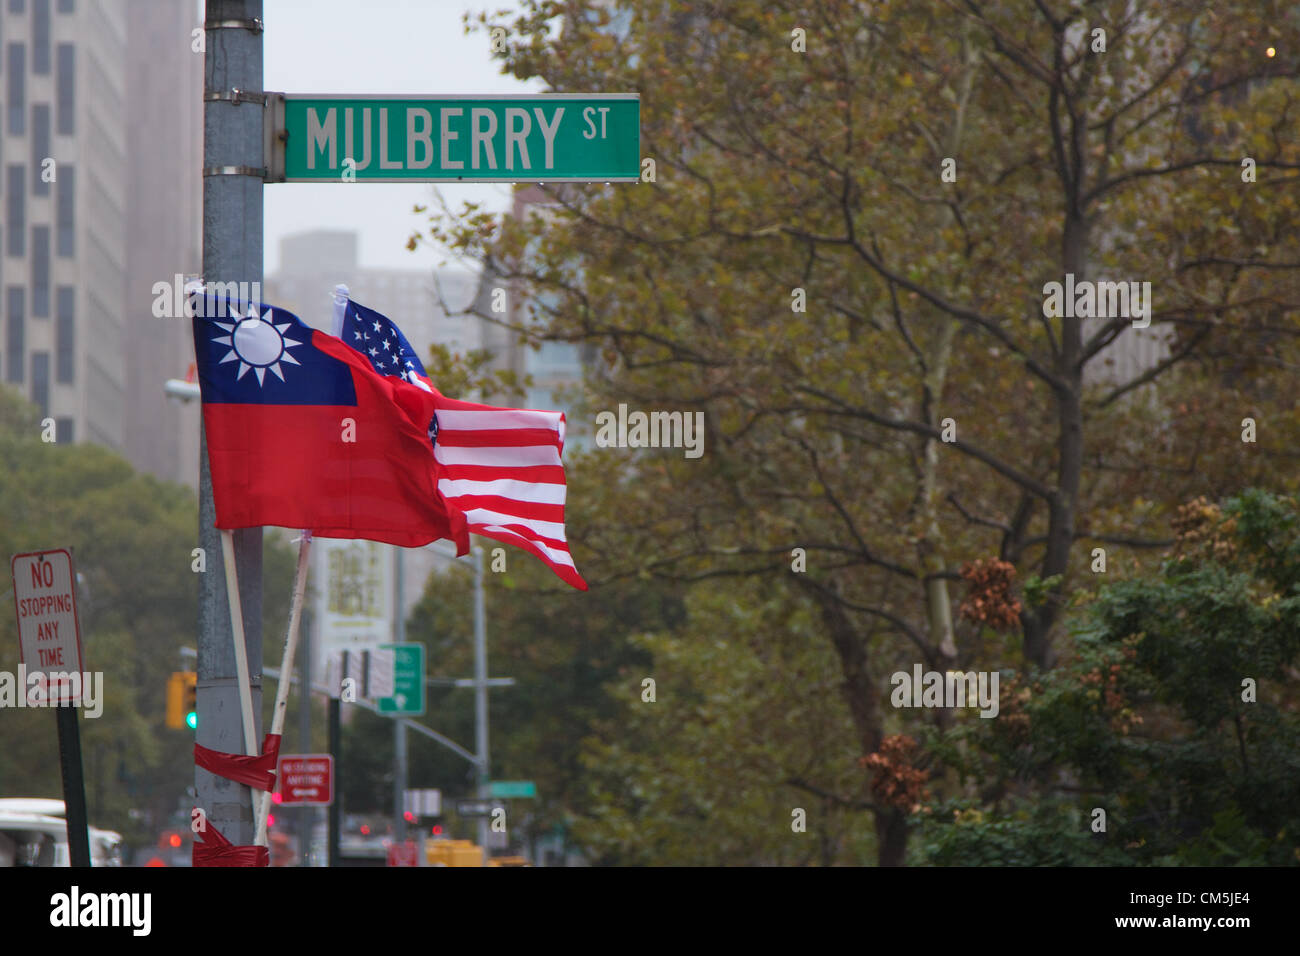 New York, NY - Ottobre 9, 2012: taiwanesi e noi le bandiere lo streaming di fianco a fianco in una celebrazione non ufficiale dei produttori taiwanesi Giornata nazionale del Mulberry Street, nell'area di Chinatown di Manhattan, New York, NY, STATI UNITI D'AMERICA, IL 9 OTTOBRE 2012 Foto Stock